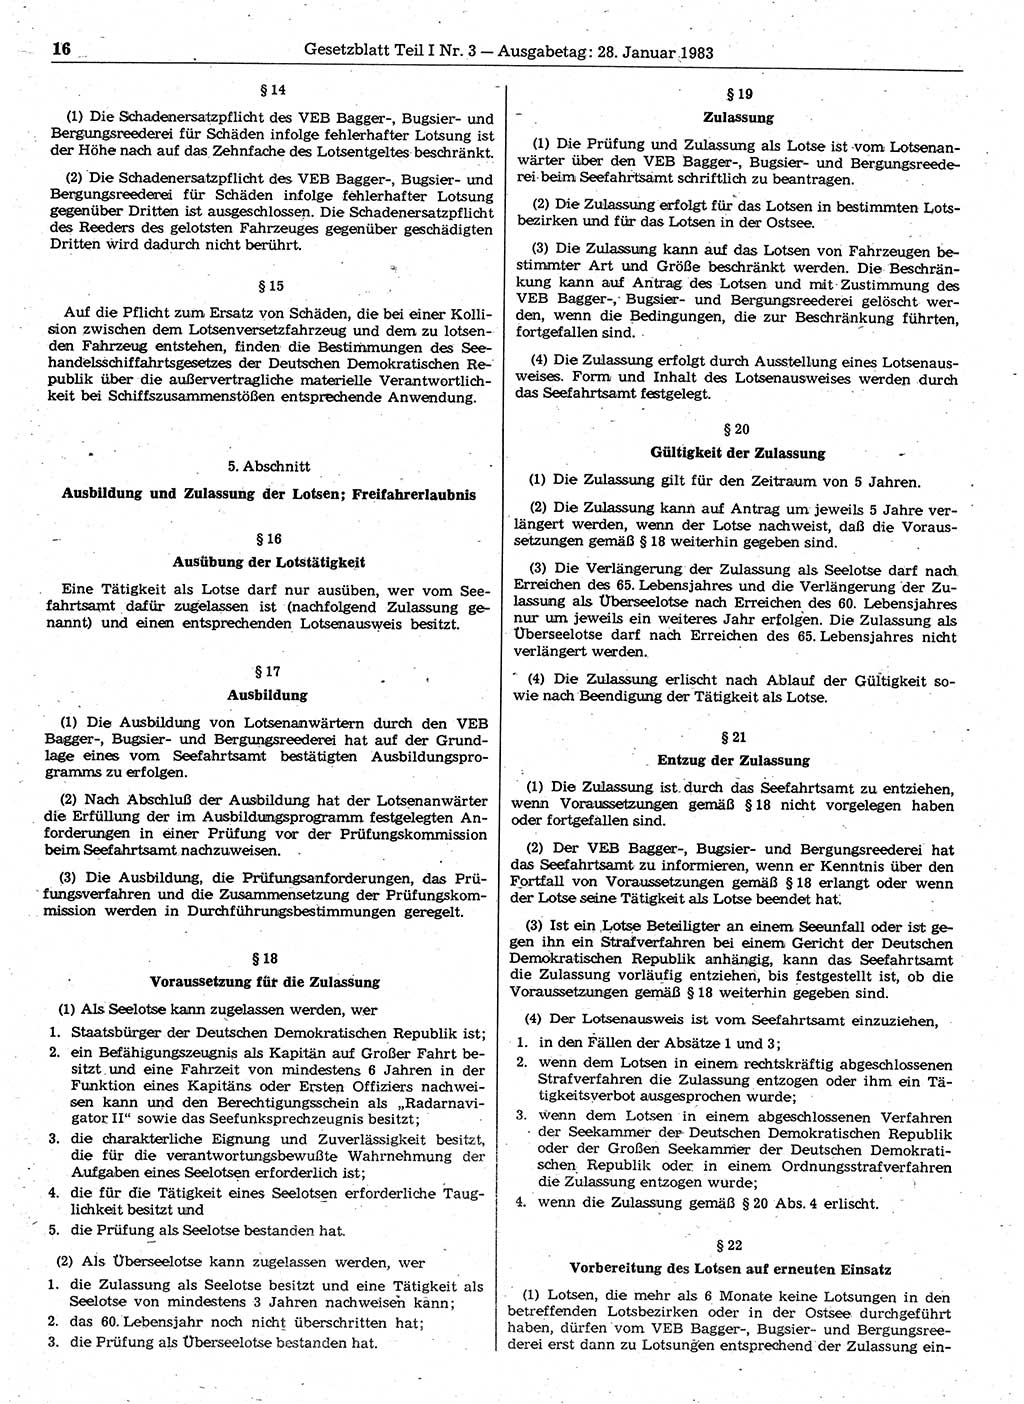 Gesetzblatt (GBl.) der Deutschen Demokratischen Republik (DDR) Teil Ⅰ 1983, Seite 16 (GBl. DDR Ⅰ 1983, S. 16)